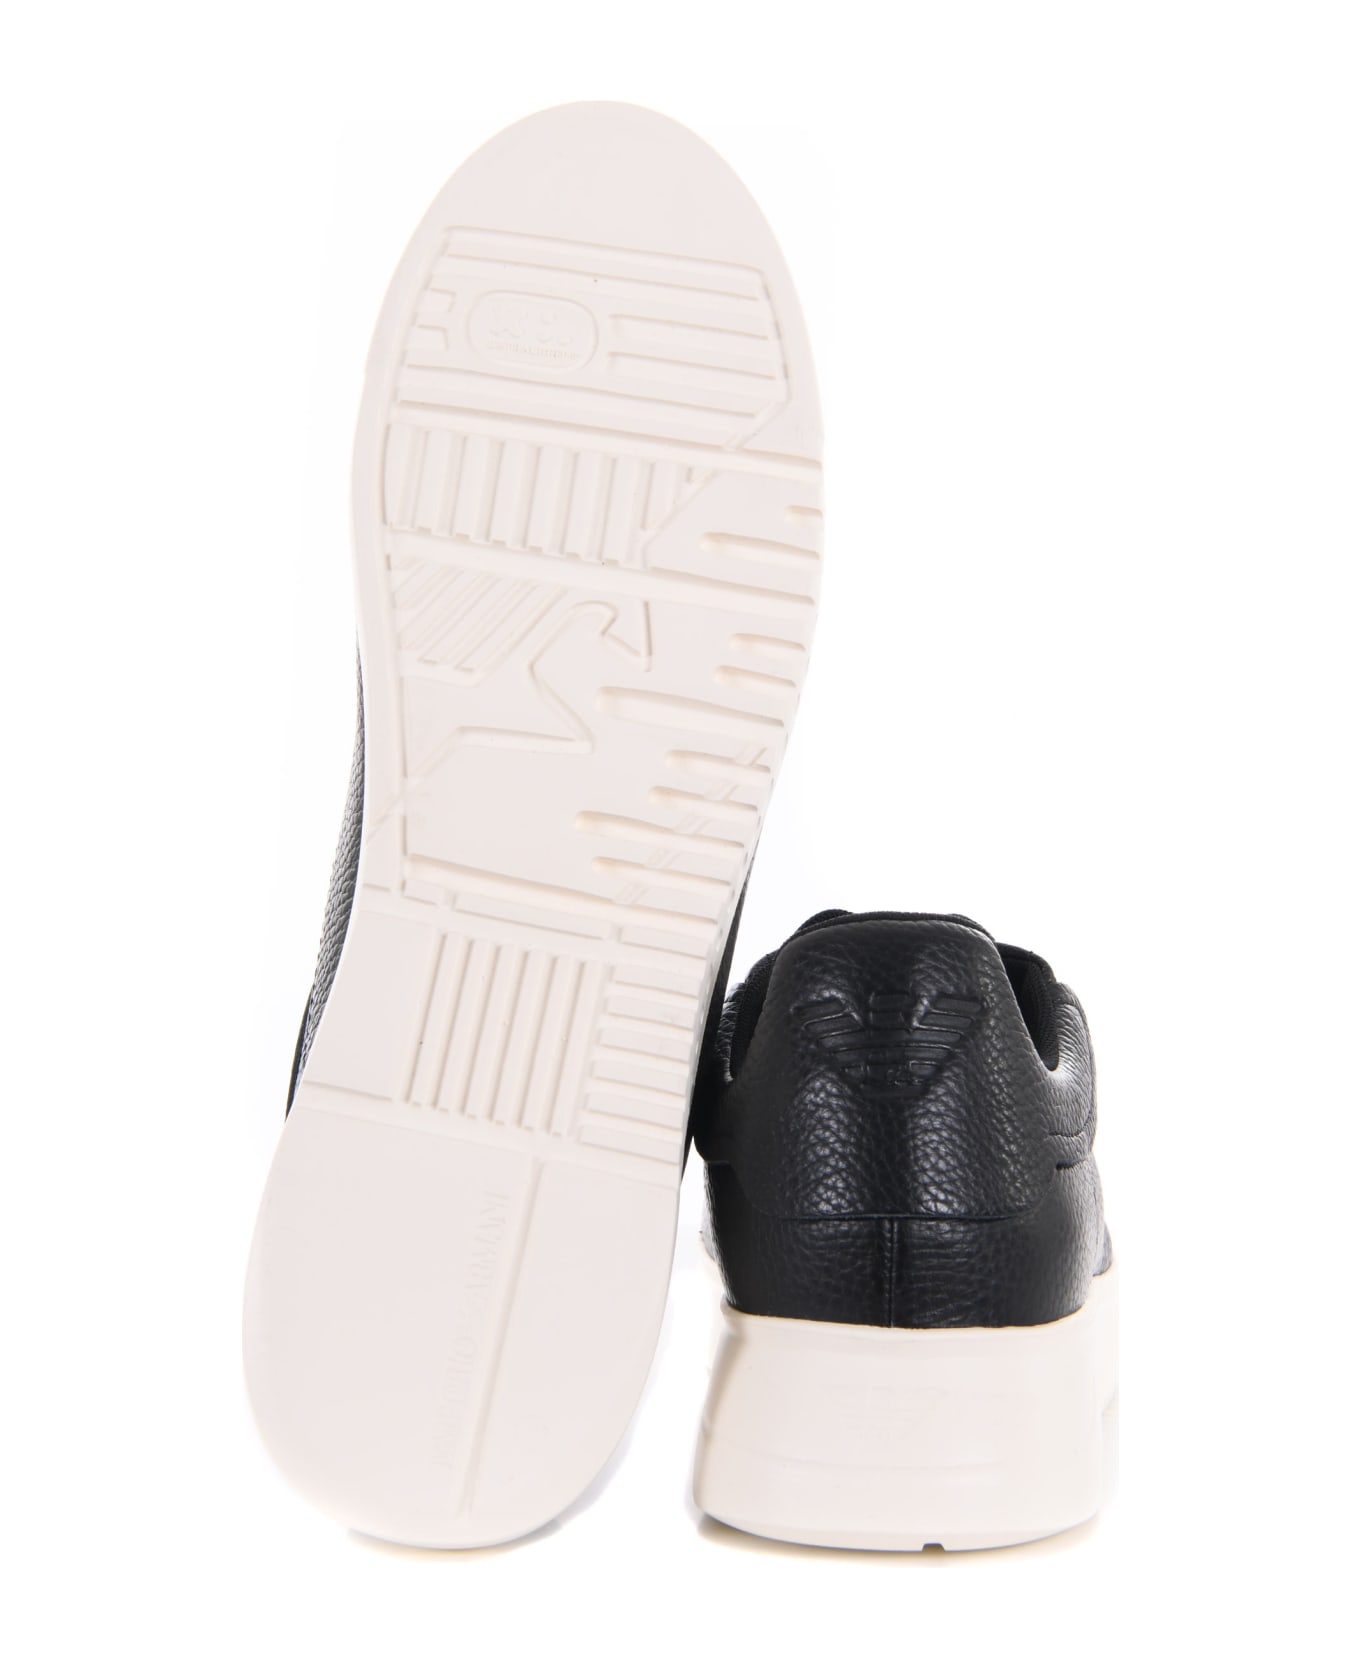 Emporio Armani Leather Sneakers - Nero スニーカー